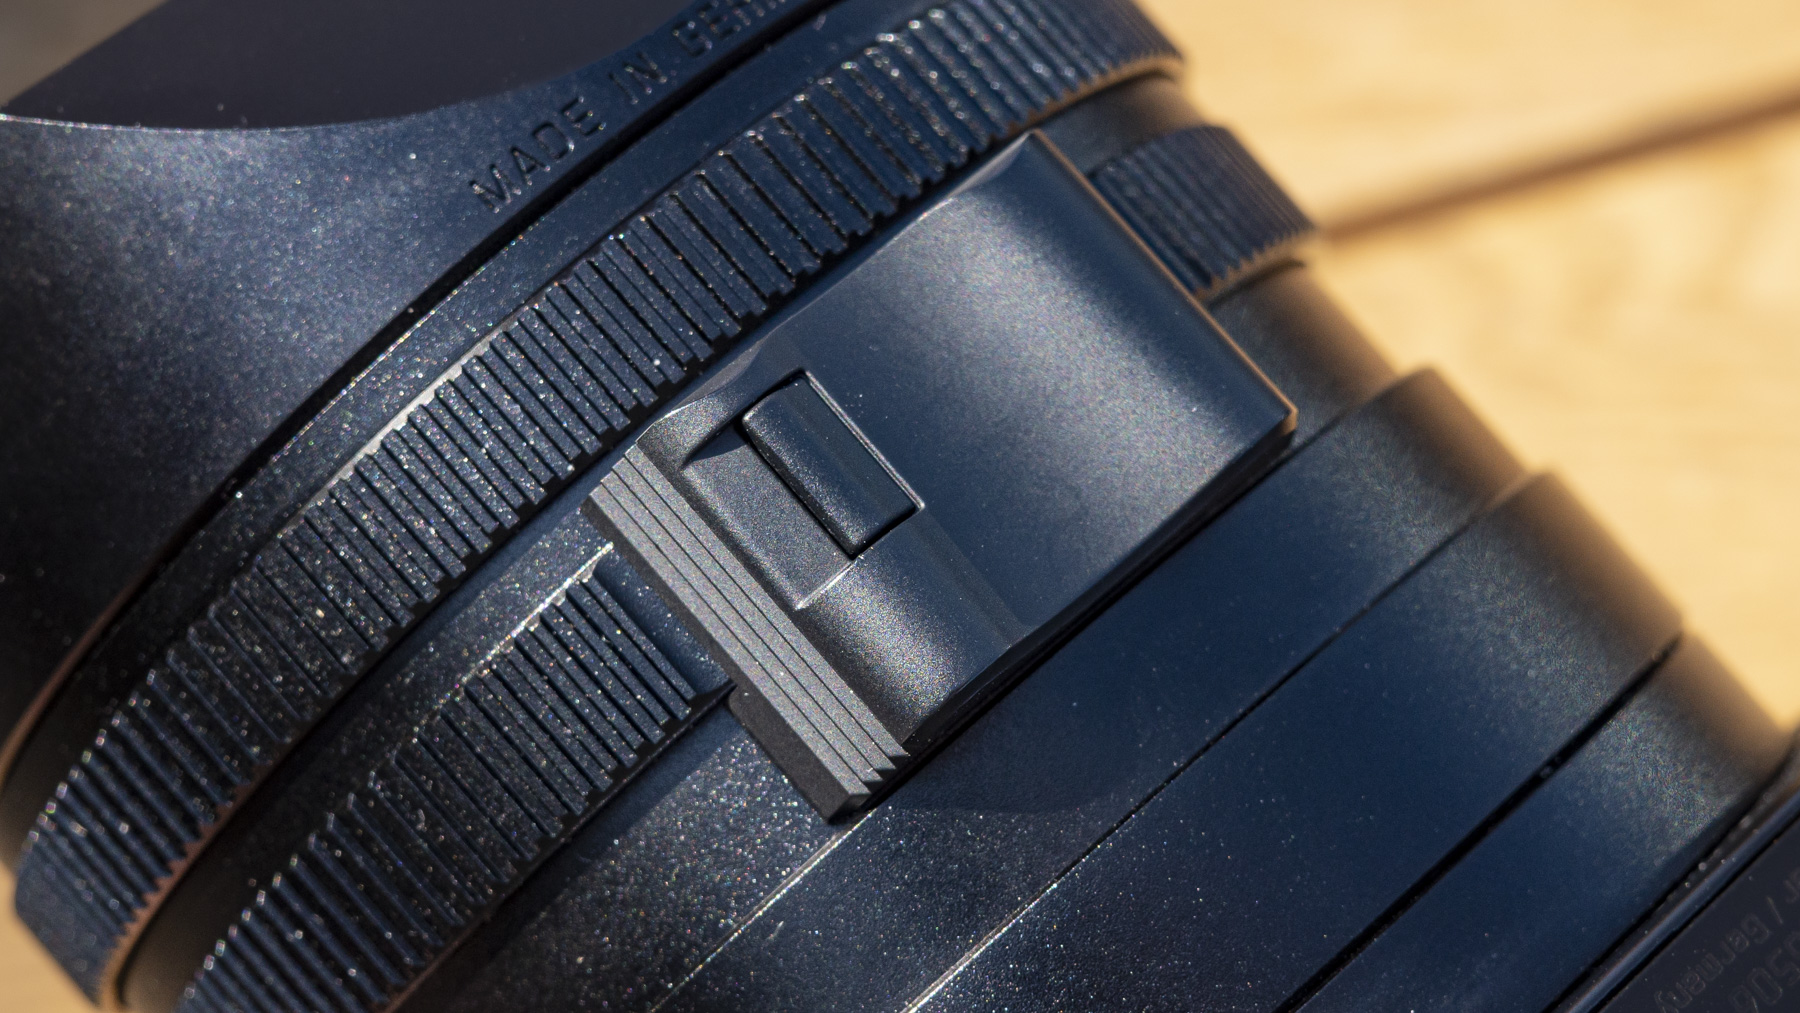 Leica Q3 camera closeup of lens focus ring